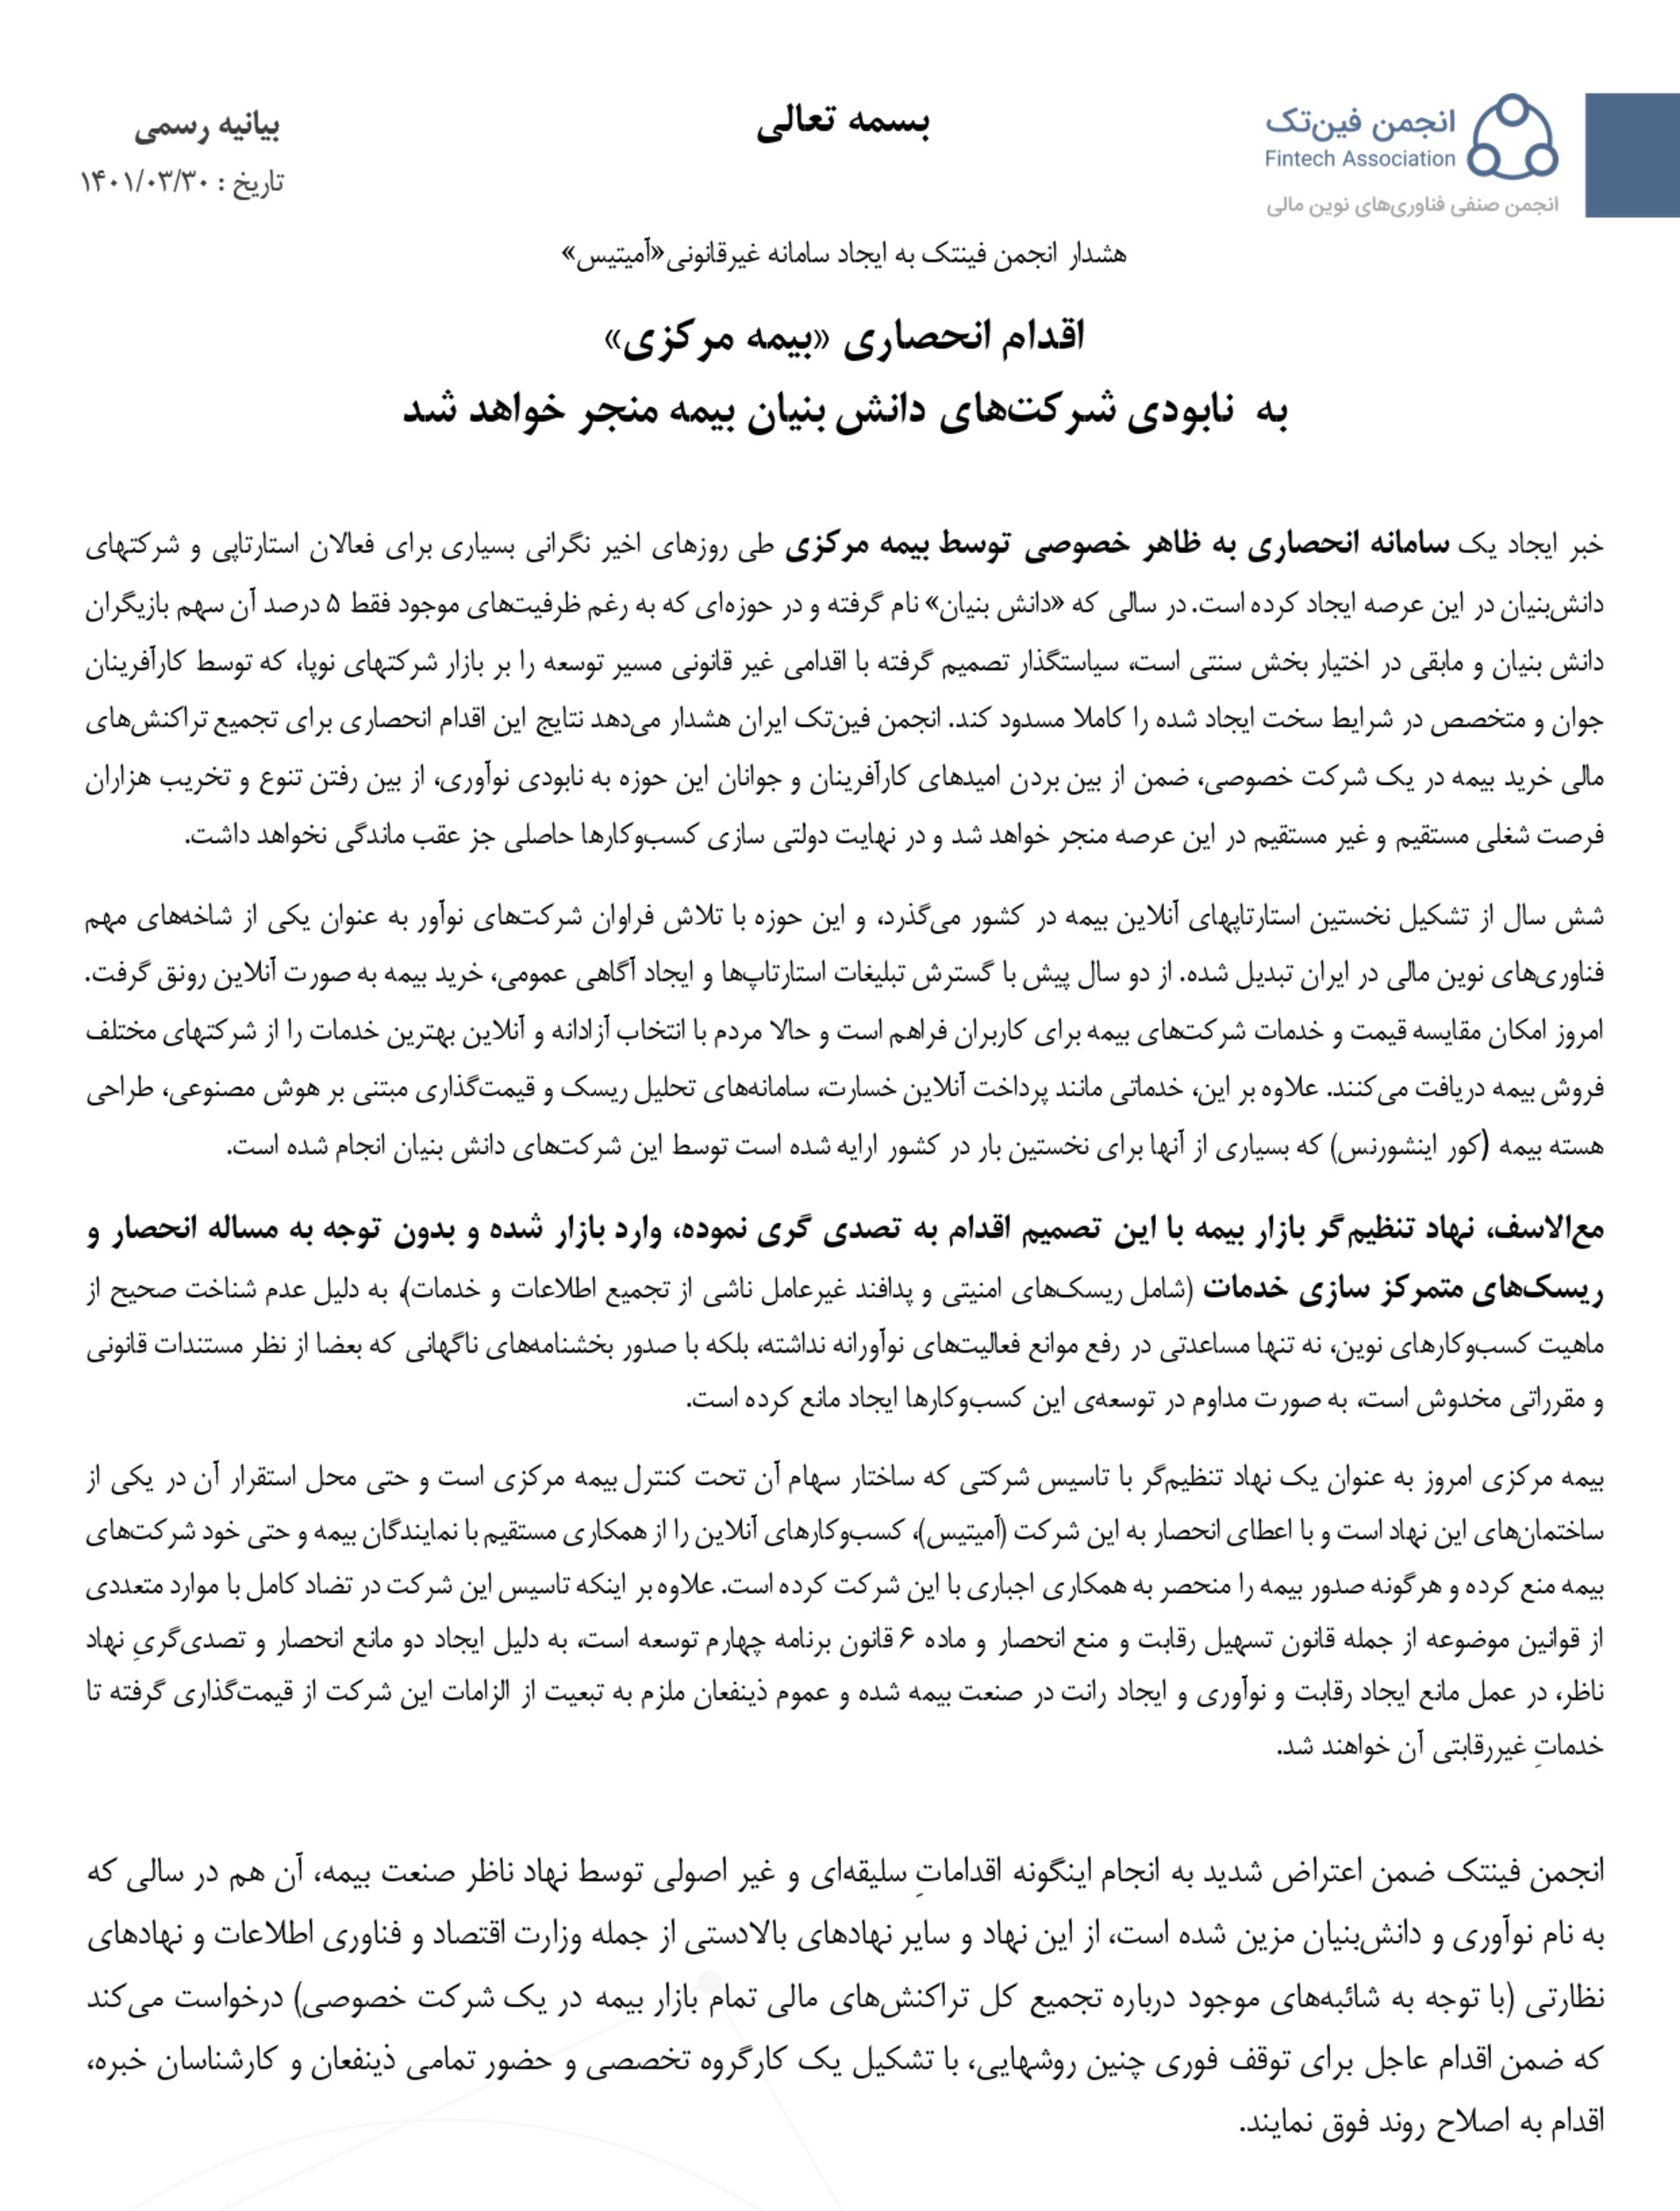 بیانیه انجمن فین تک ایران - بیمه مرکزی